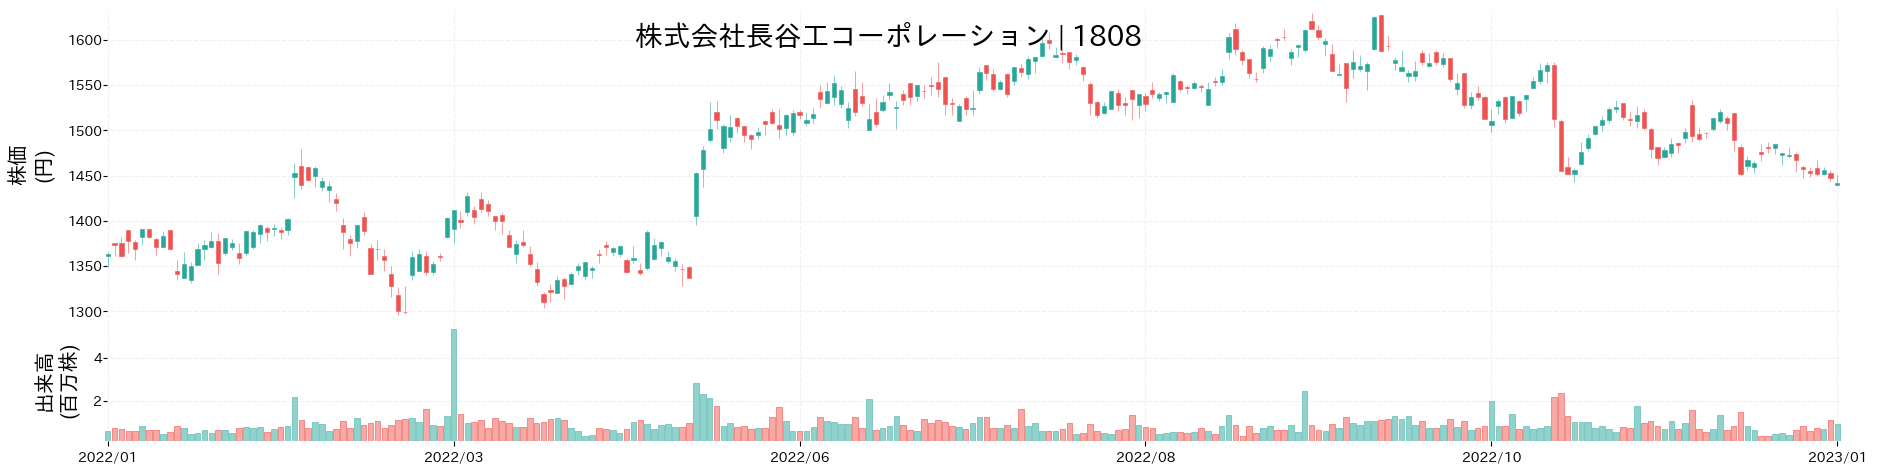 長谷工コーポレーションの株価推移(2022)